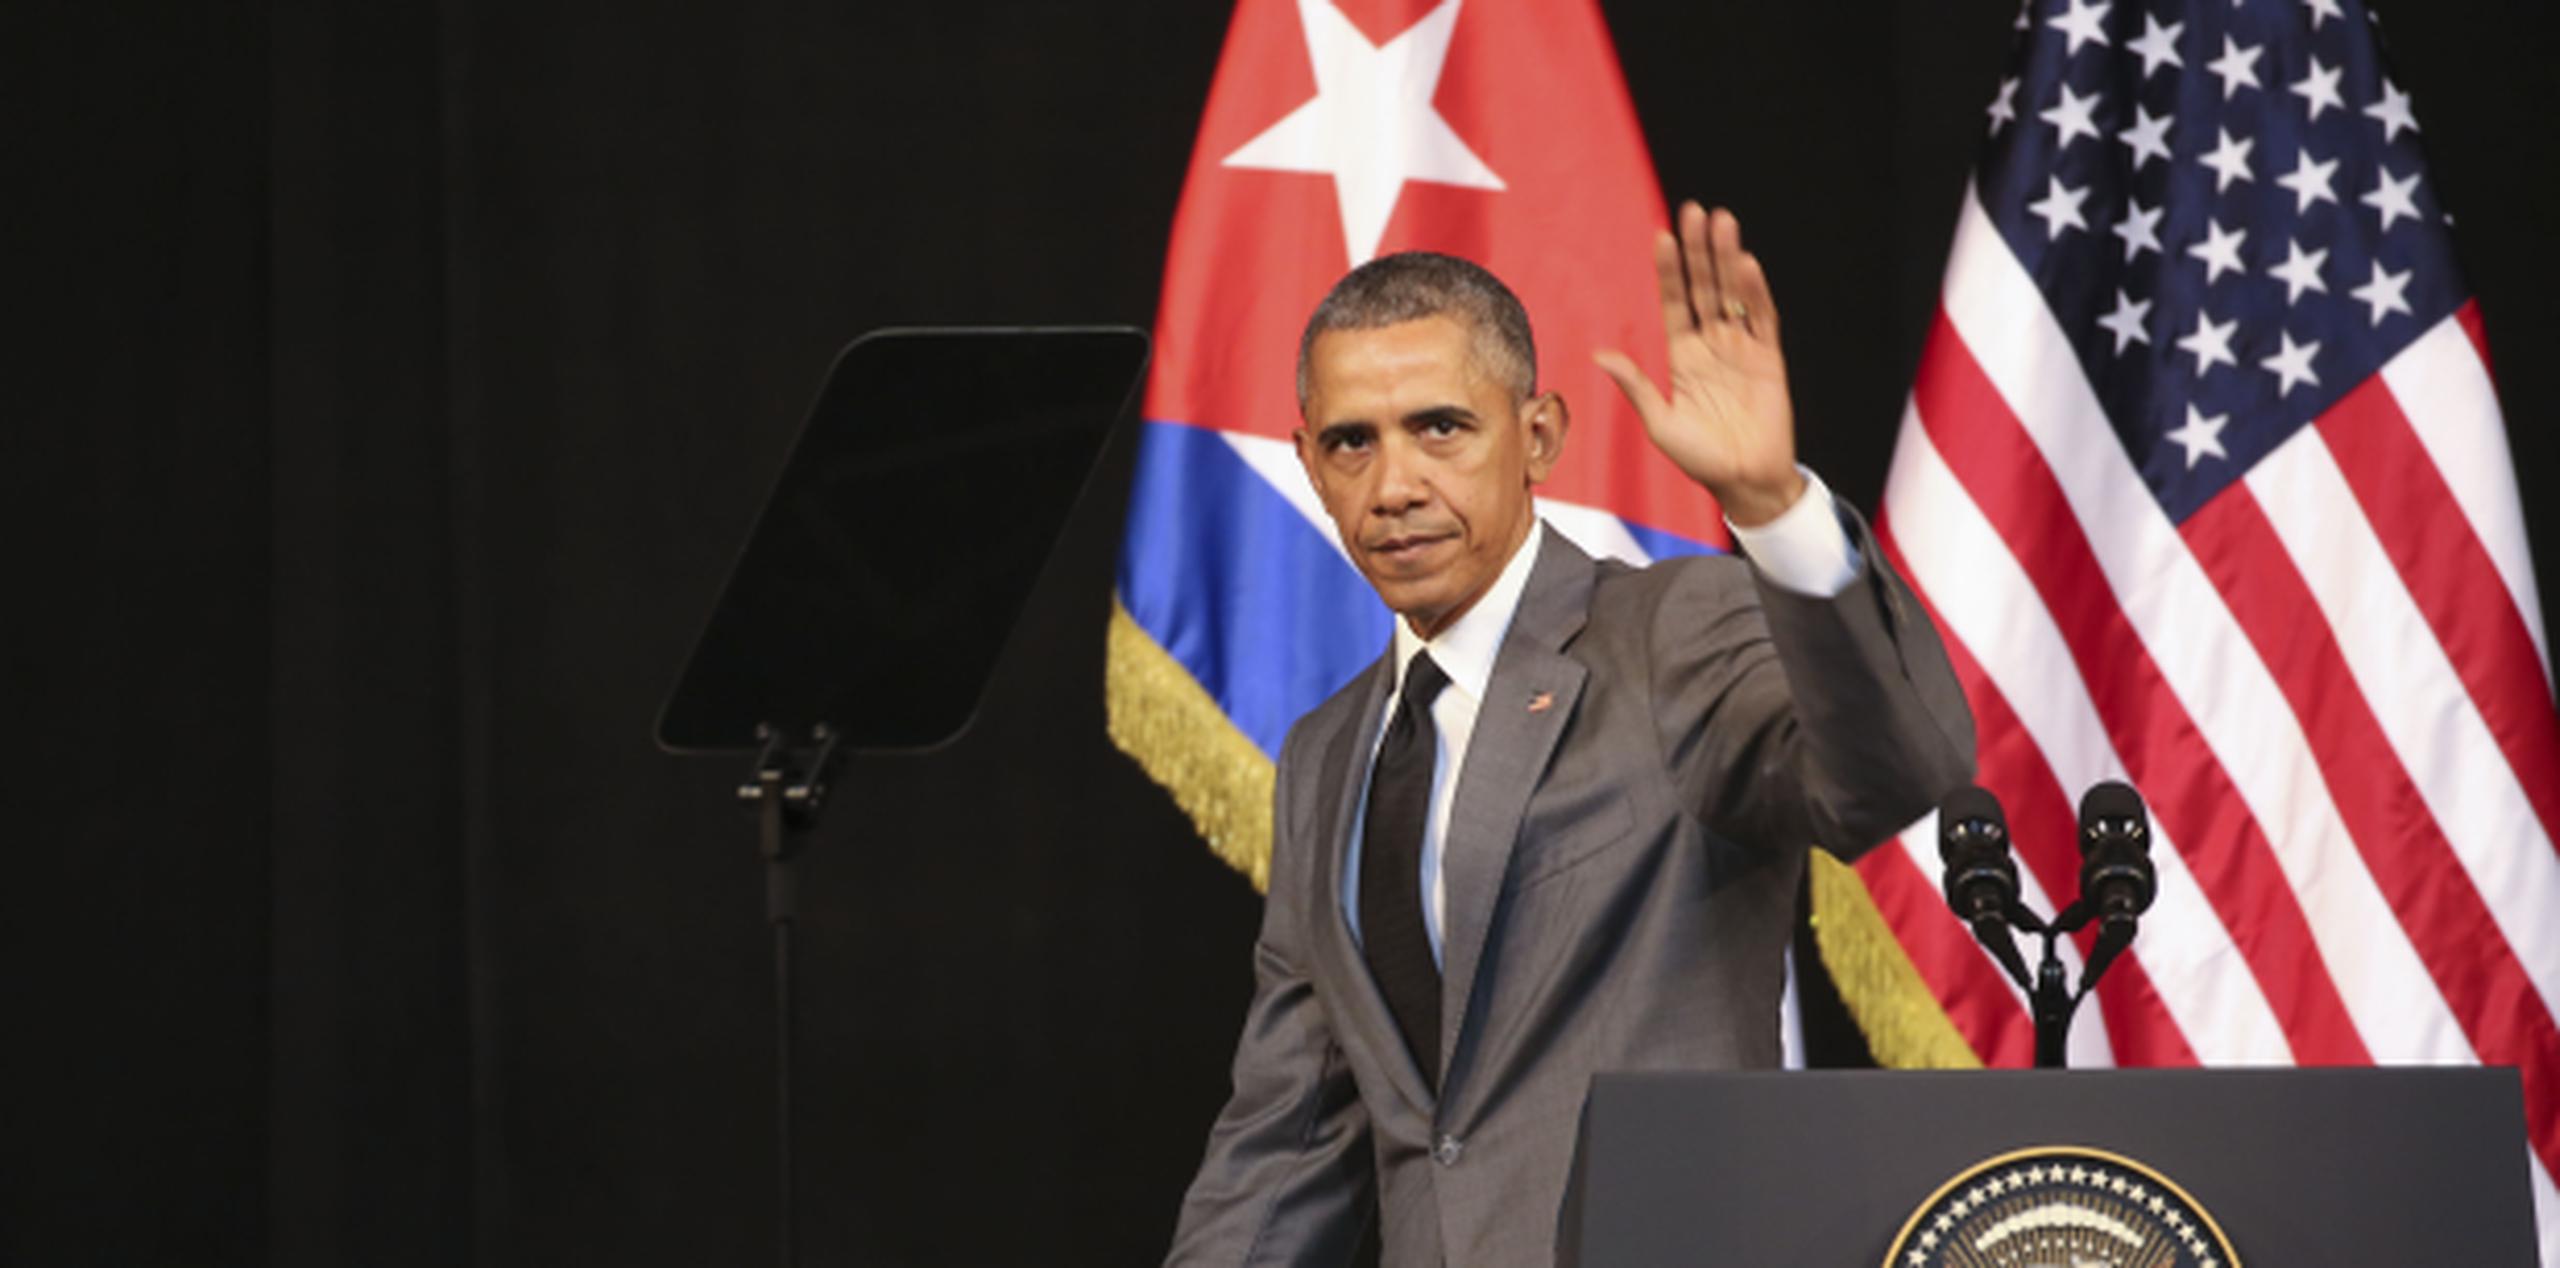 El presidente de los Estados Unidos durante su visita a Cuba en marzo de este año. (Archivo GFR Media / Dennis M. Rivera Pichardo)